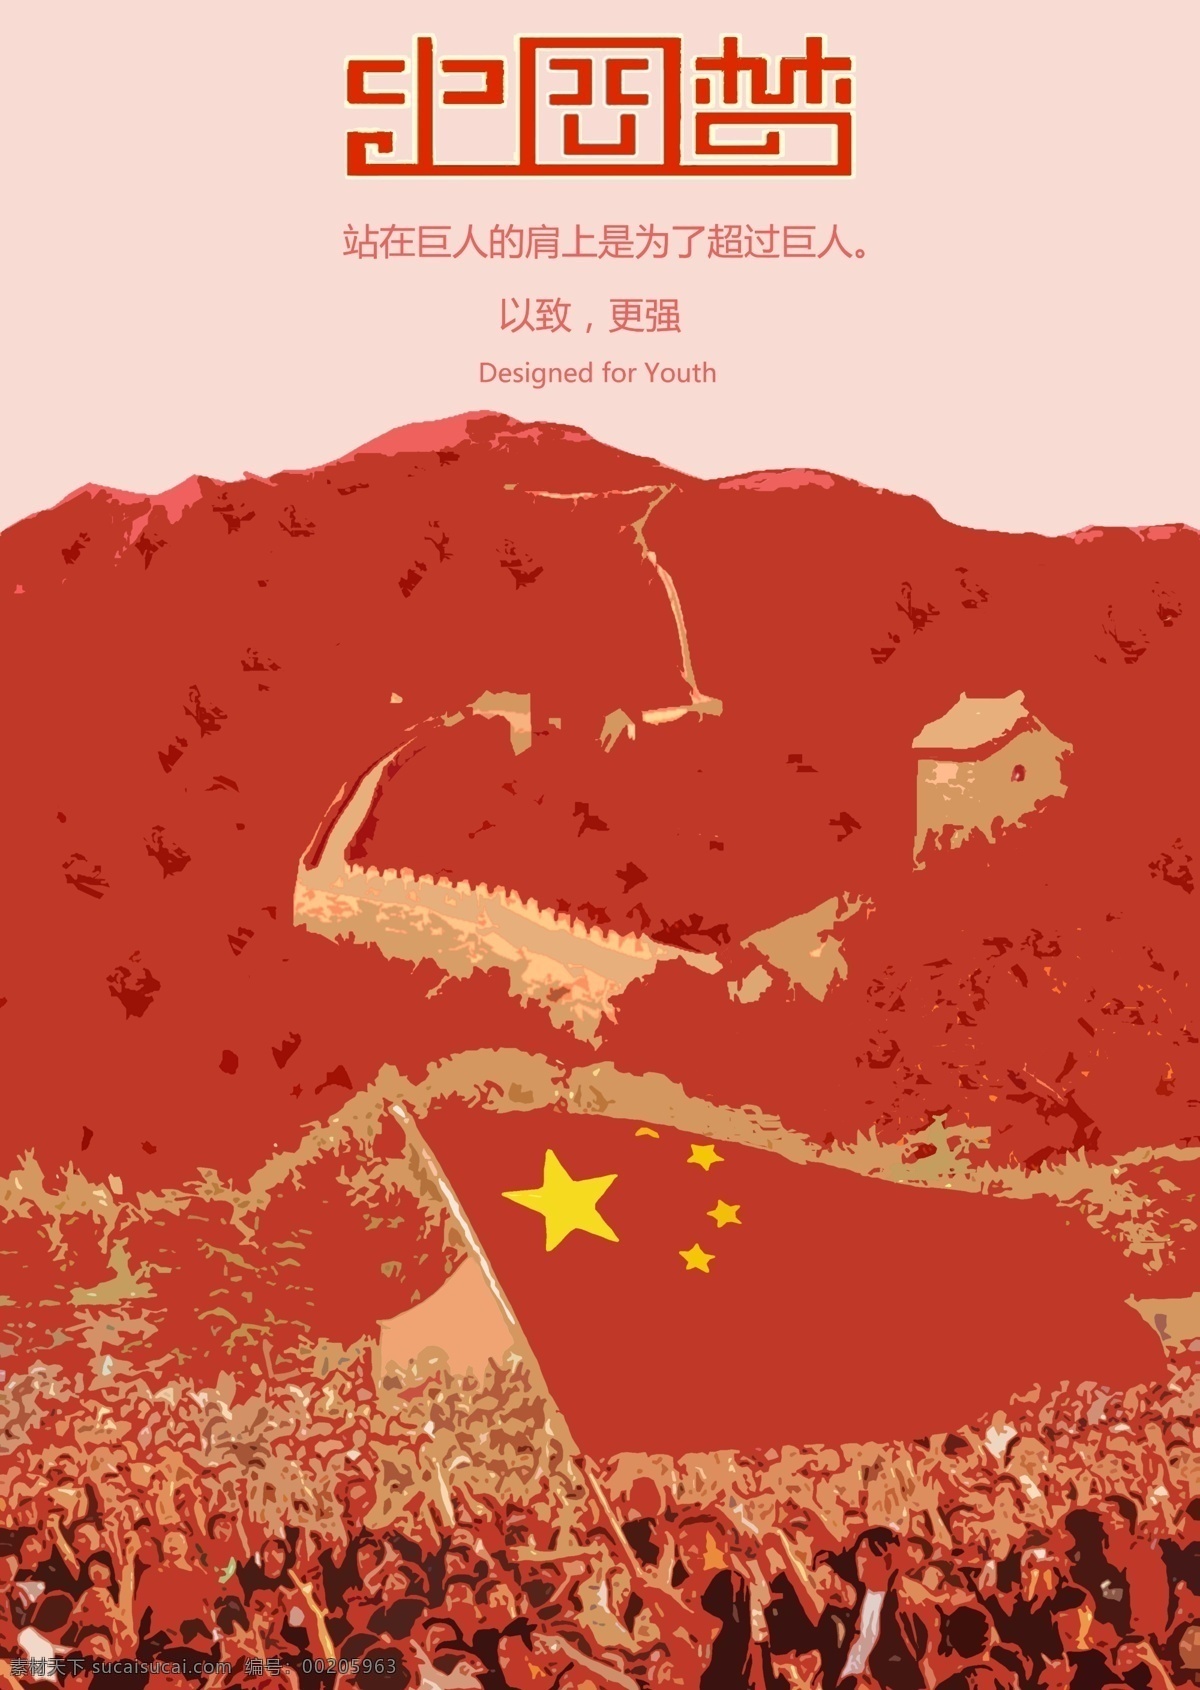 中国 梦 主题 海报 铁人三项 创意海报 暖调 中国梦 红色